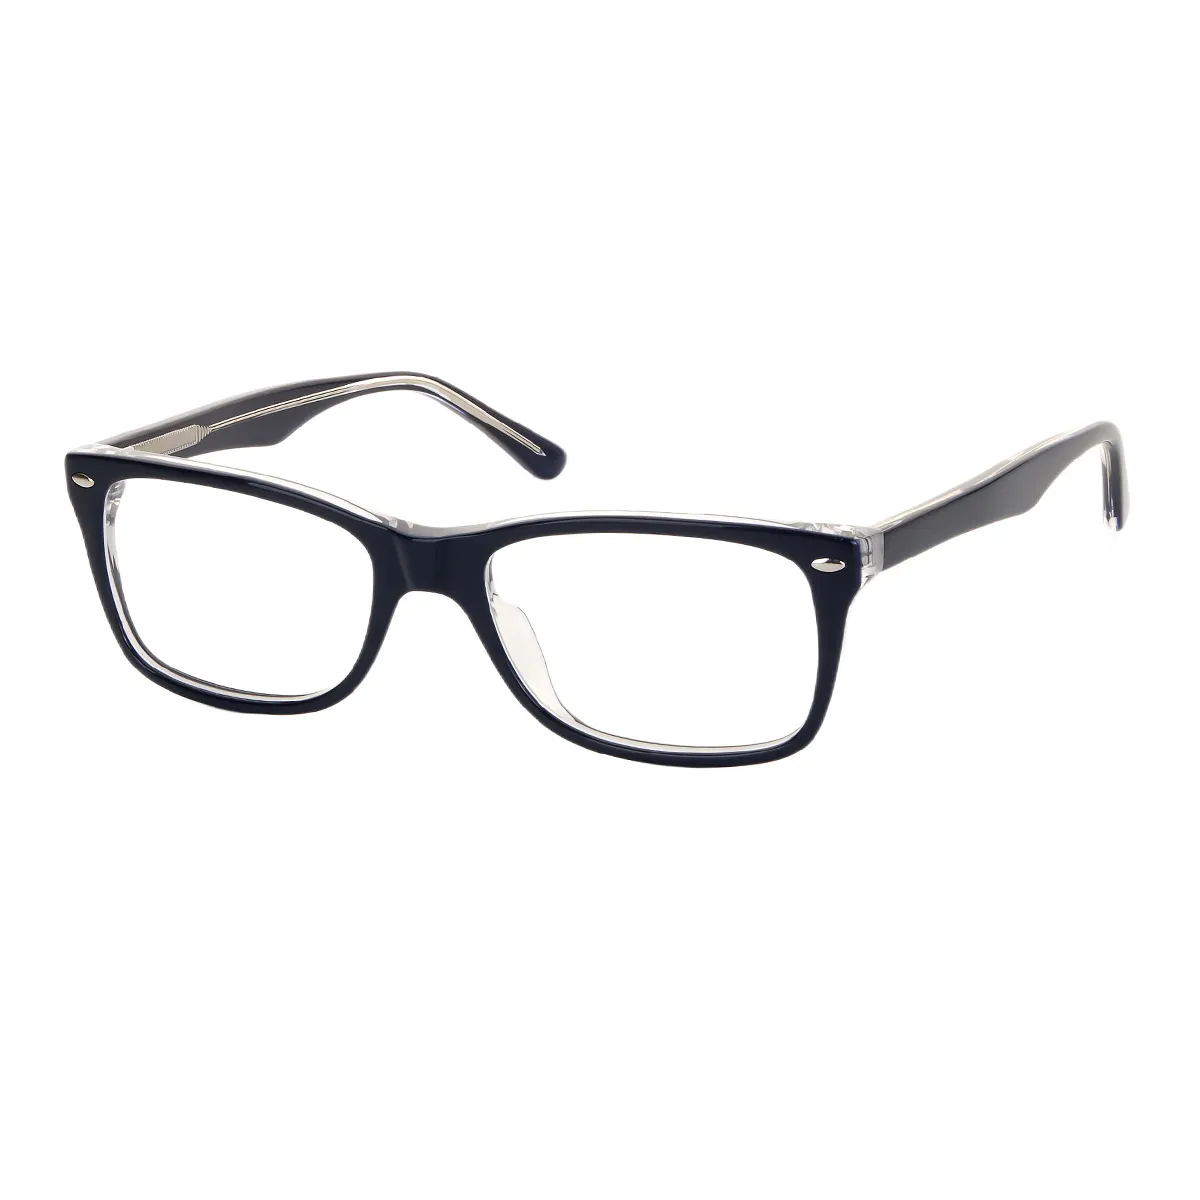 Ken - Square  Glasses for Men & Women